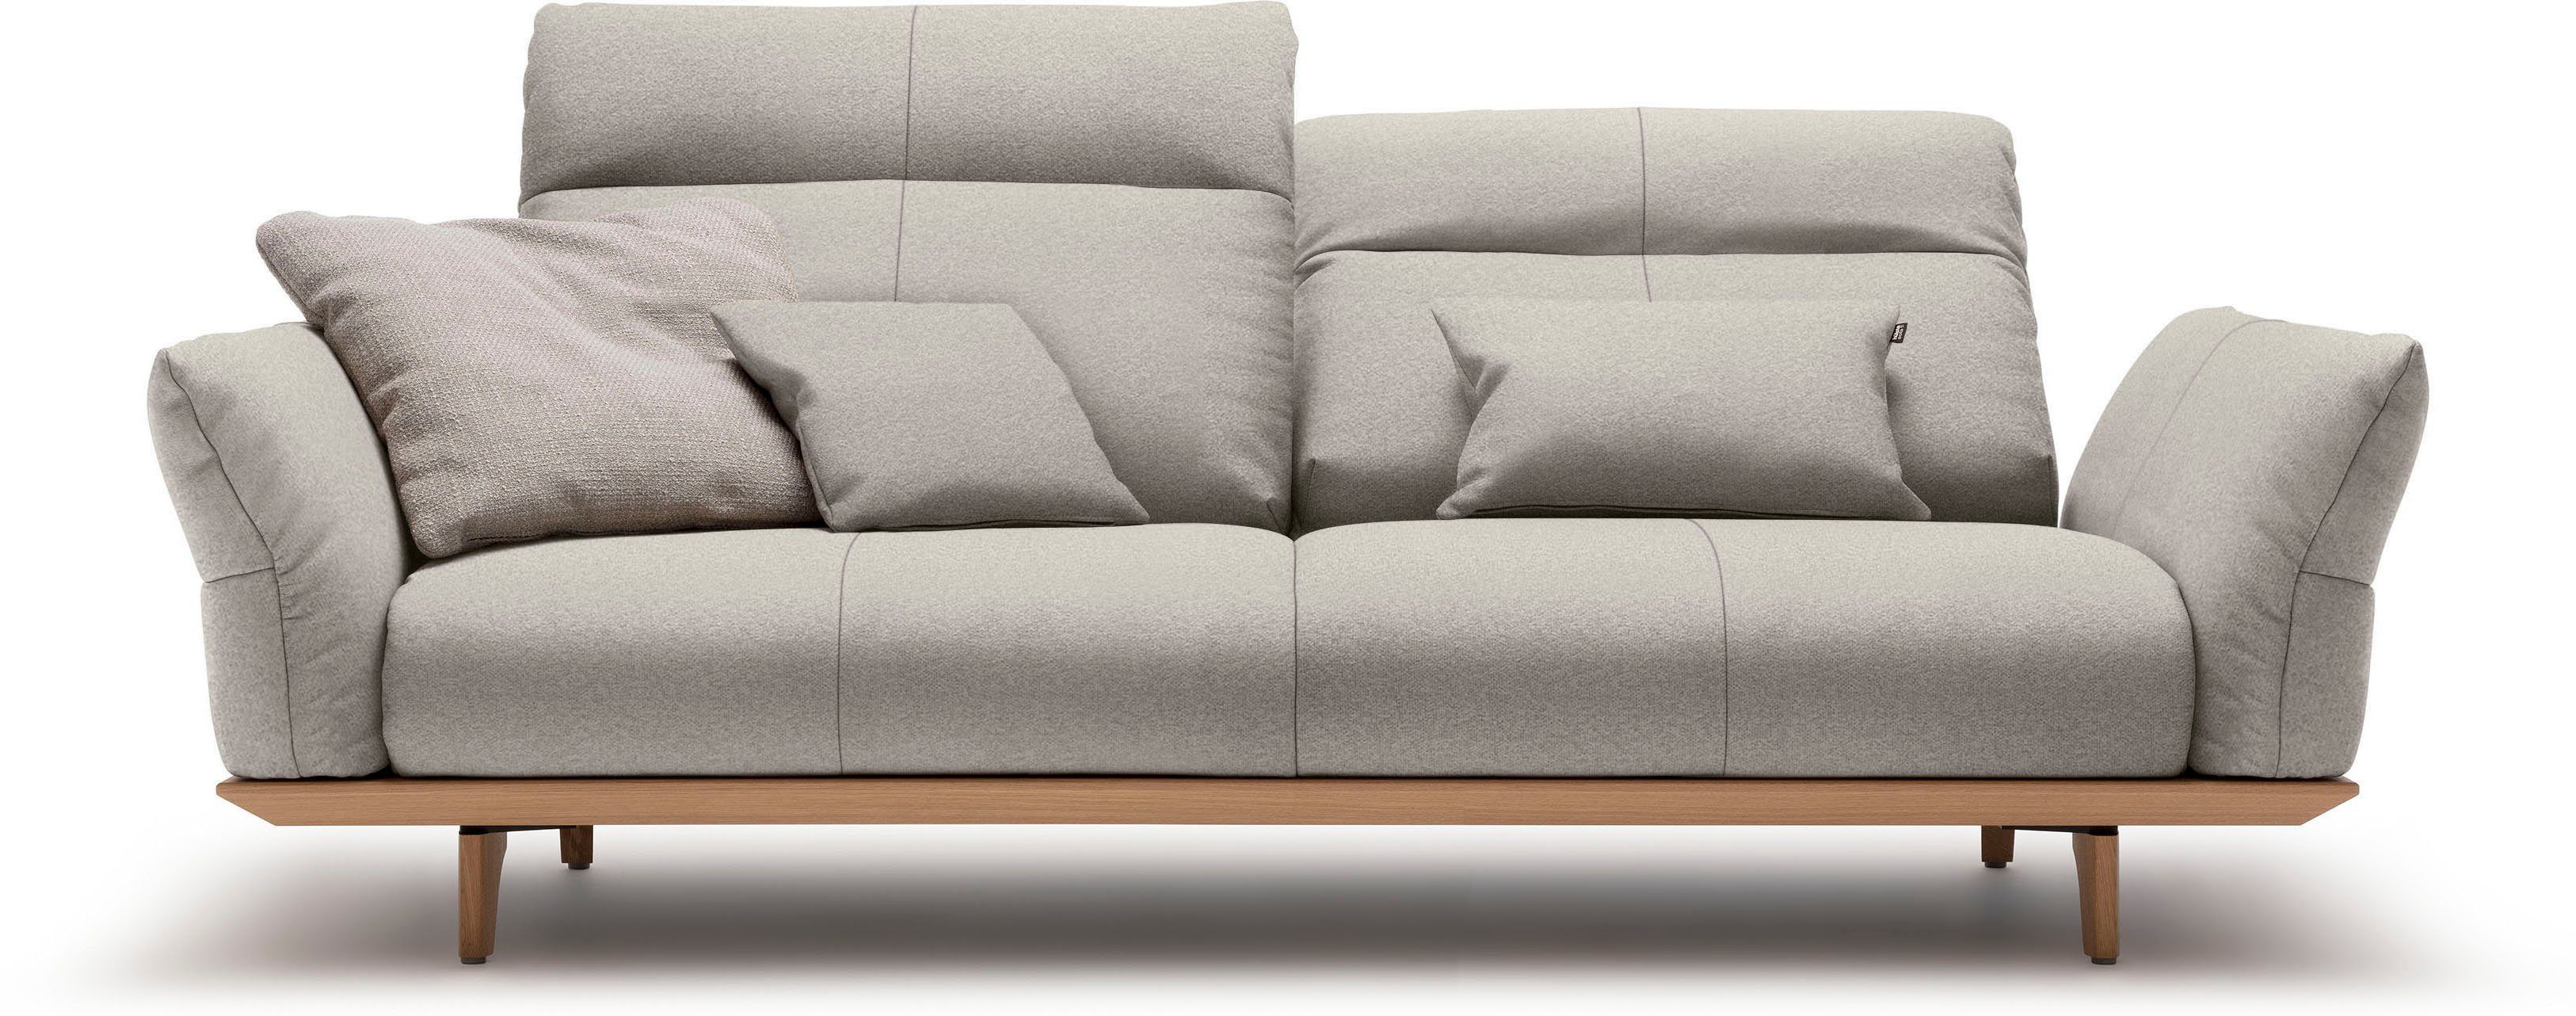 Eiche hs.460, cm 3-Sitzer Breite 208 sofa hülsta natur, Füße Eiche, in Sockel